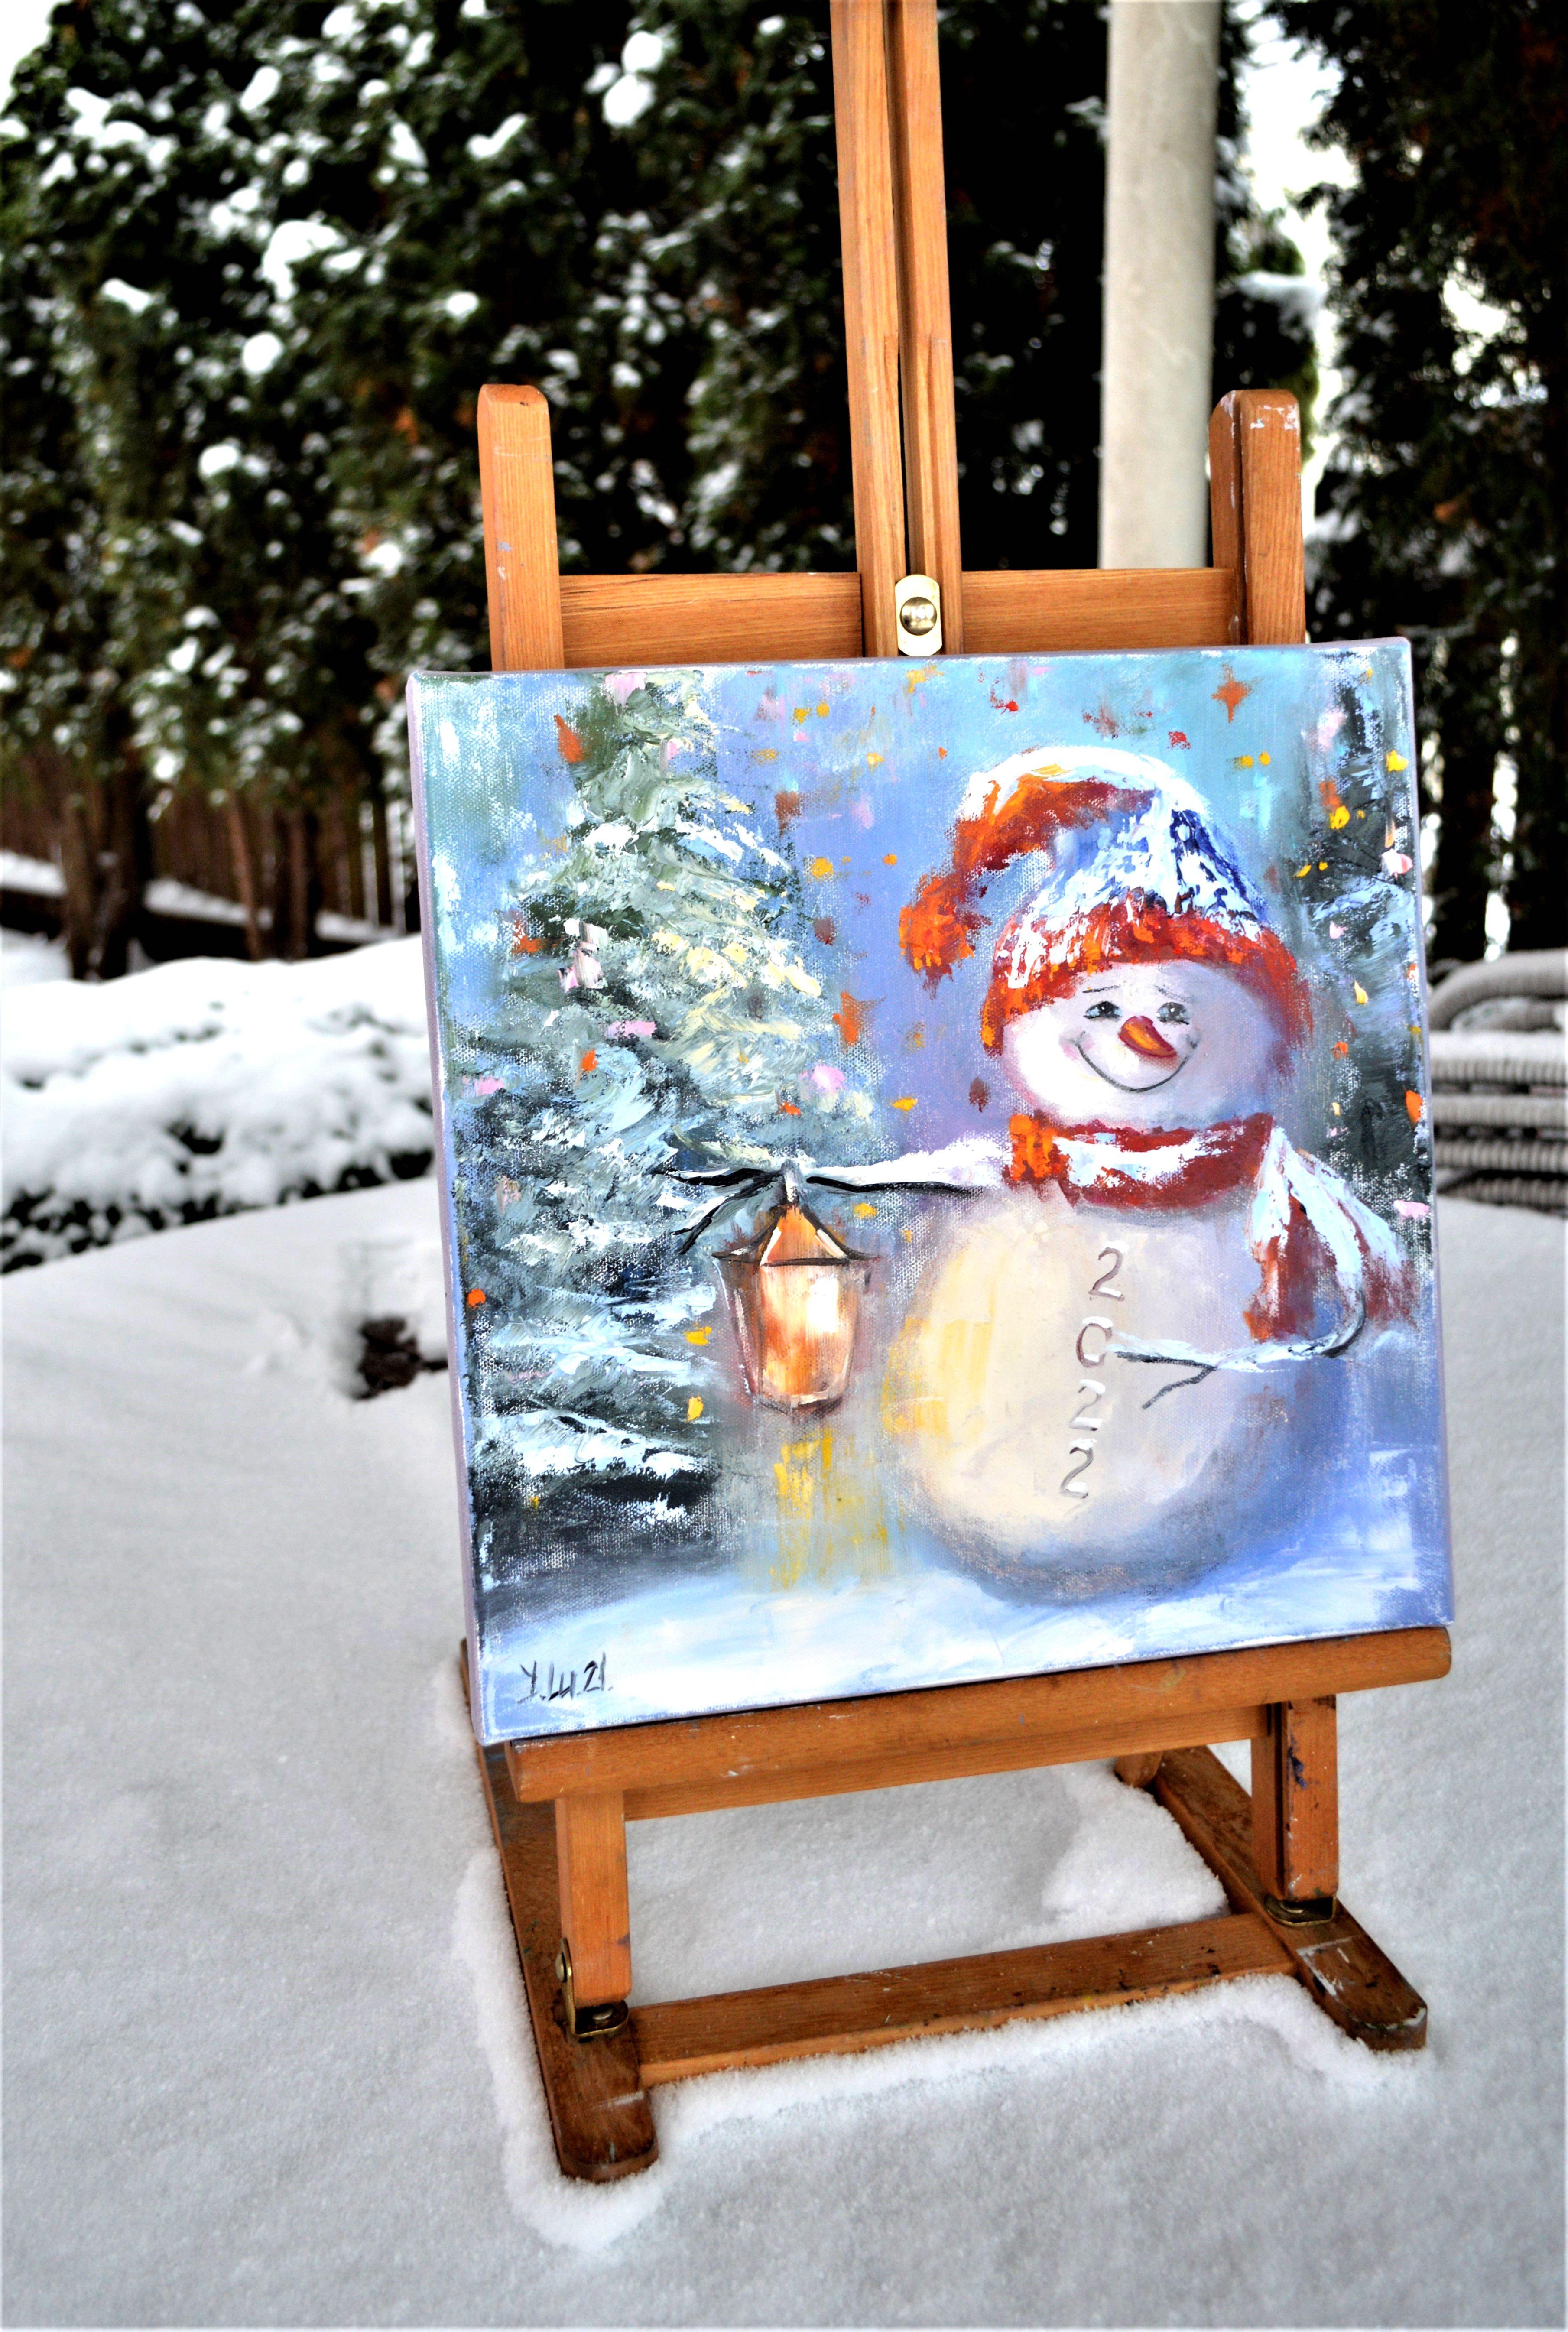 Dans cette peinture à l'huile, j'ai capturé un moment de pur émerveillement enfantin - un joyeux bonhomme de neige sur fond de crépuscule hivernal. Ses couleurs vives et éclatantes évoquent l'innocence et la nostalgie, invitant la chaleur et la joie